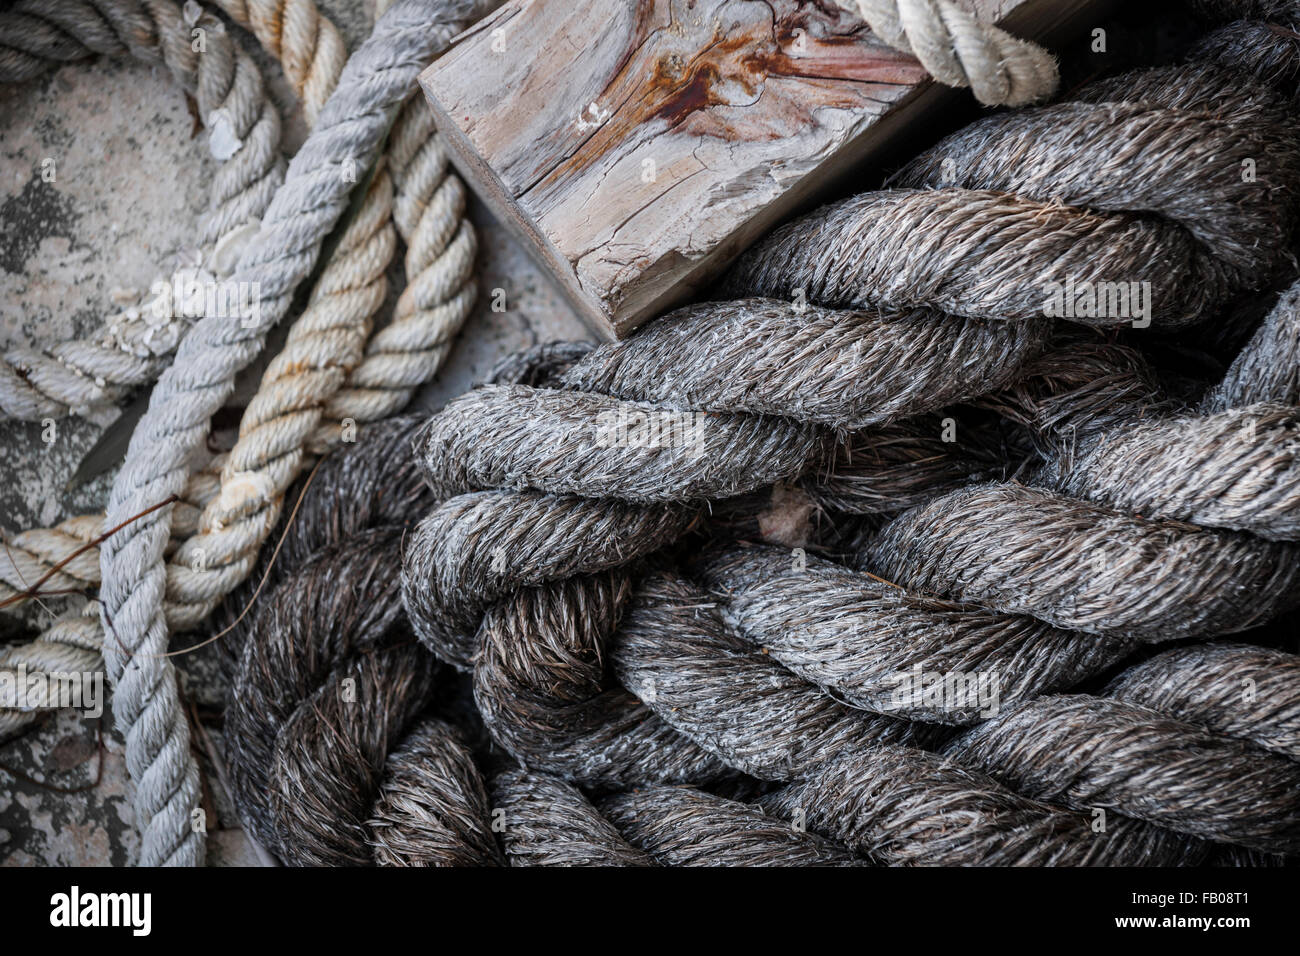 Pile of old weathered nautical ropes on dock, close up.  Key West harbor, Florida. Stock Photo